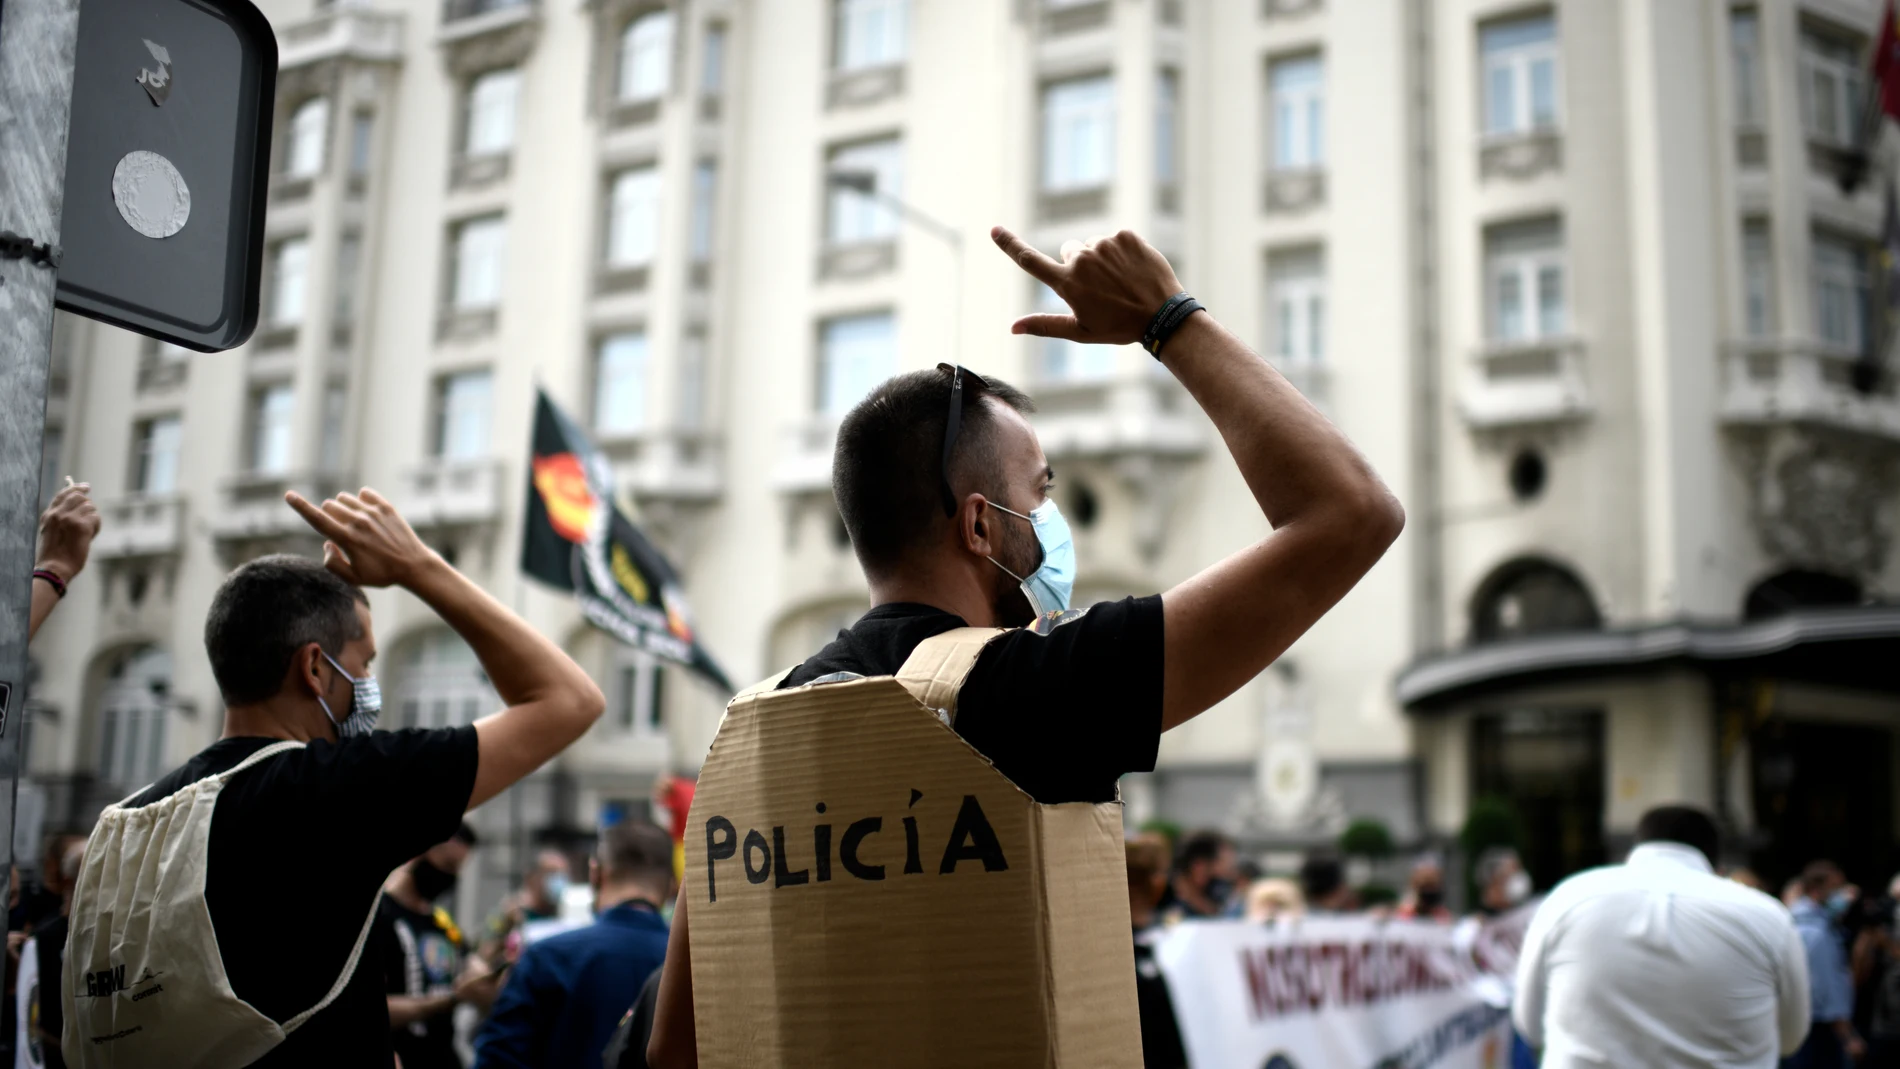 Varios participantes durante una protesta policial